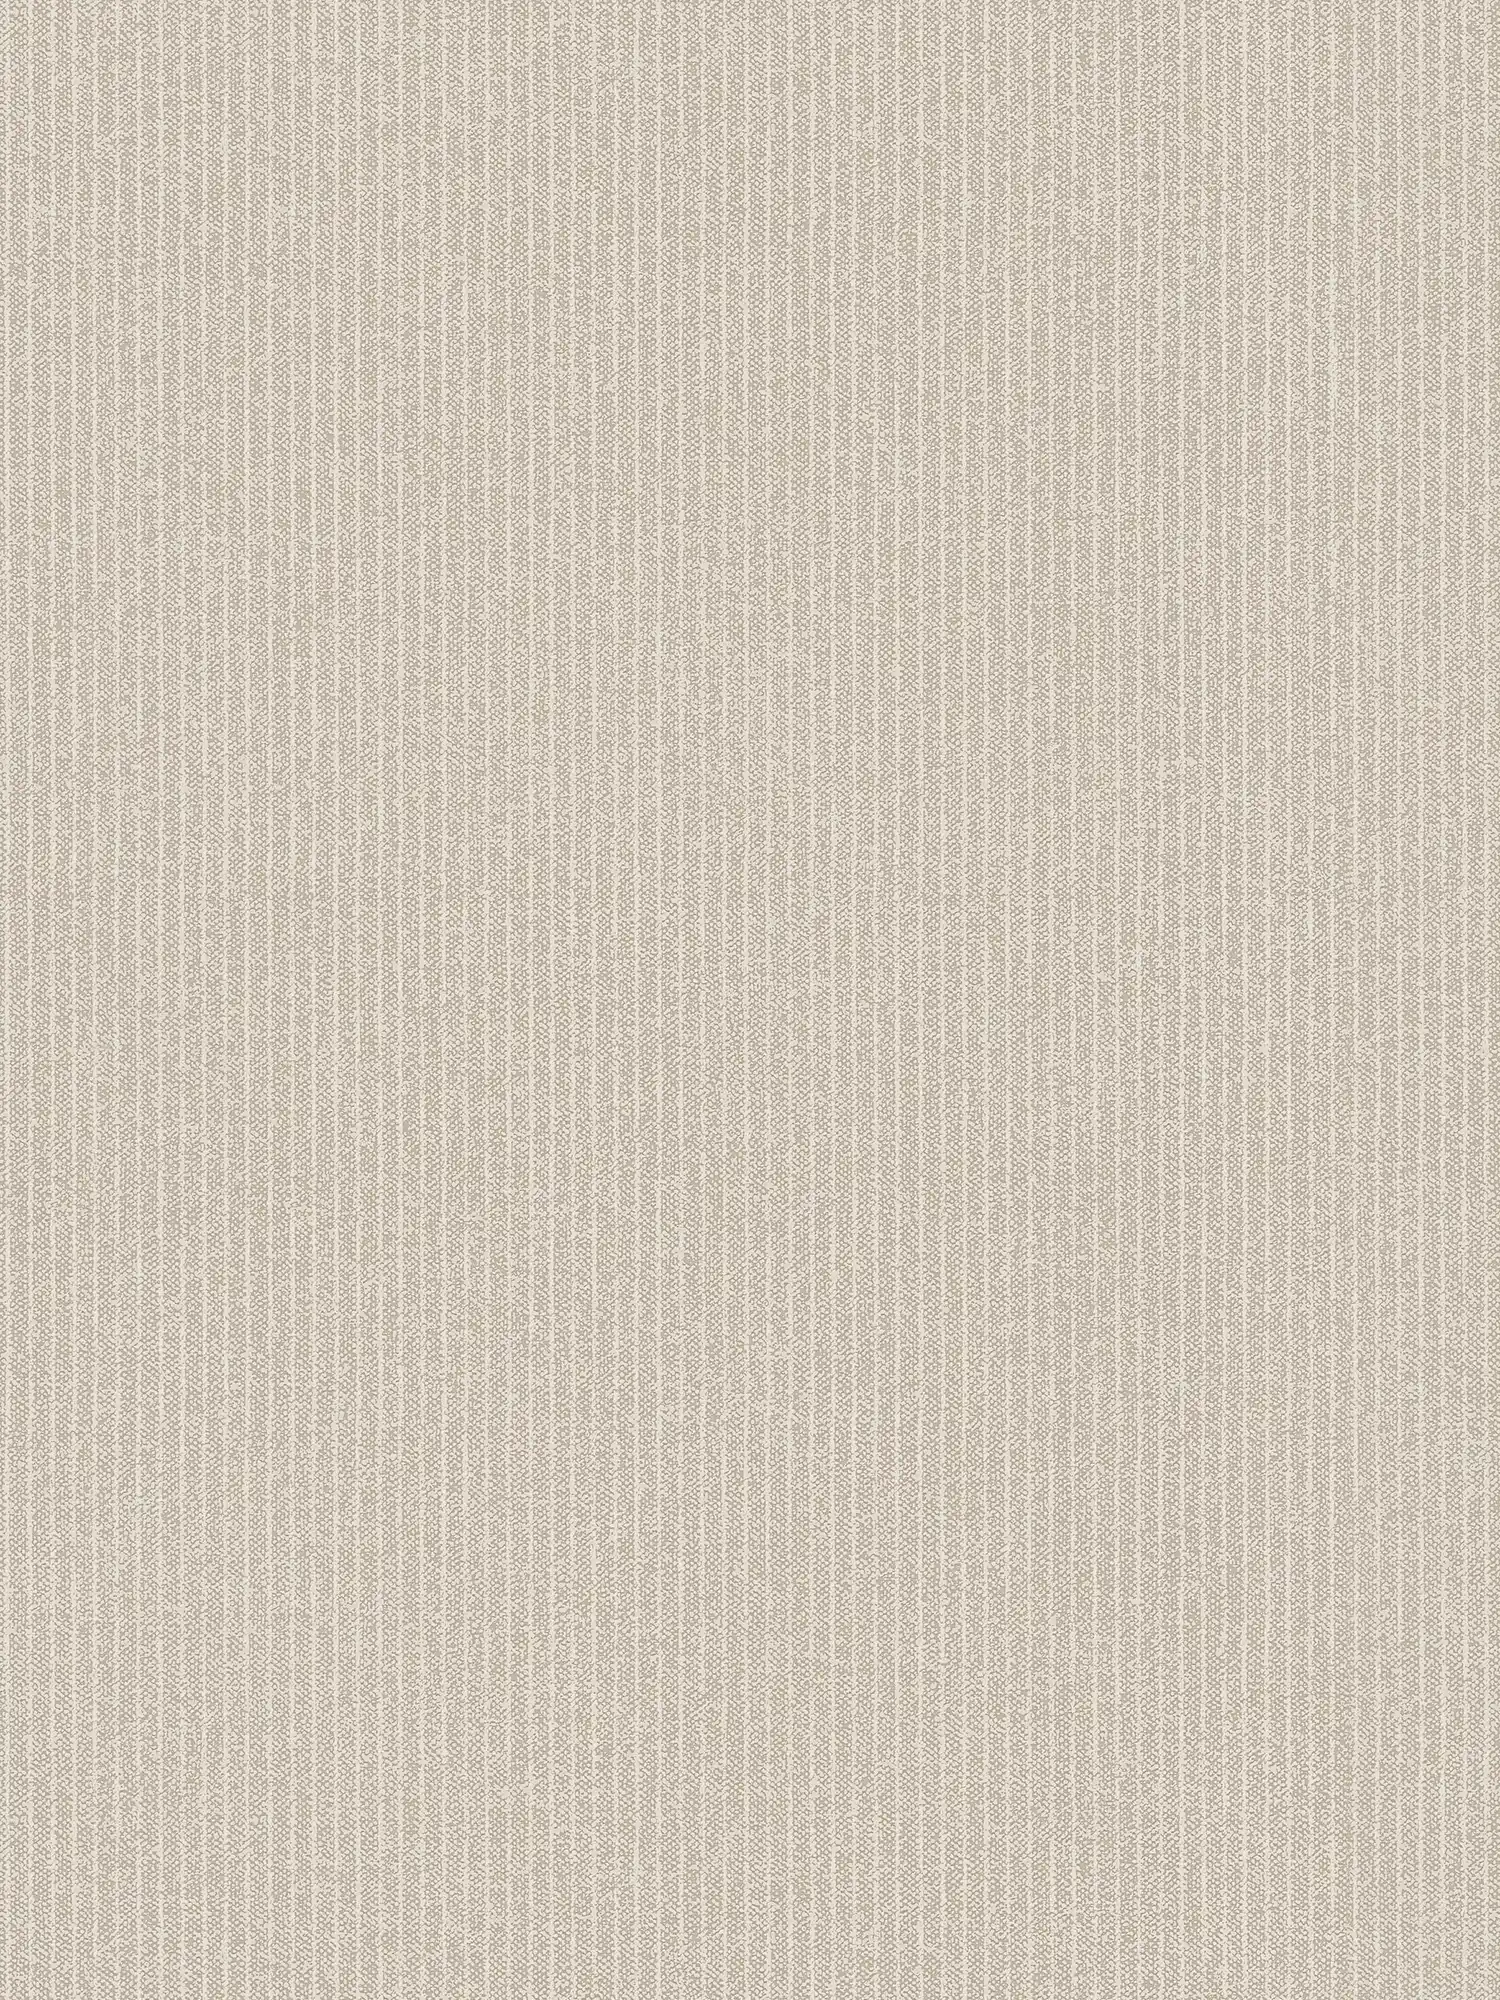 lijnenbehang smalle strepen, linnenlook - beige, bruin
